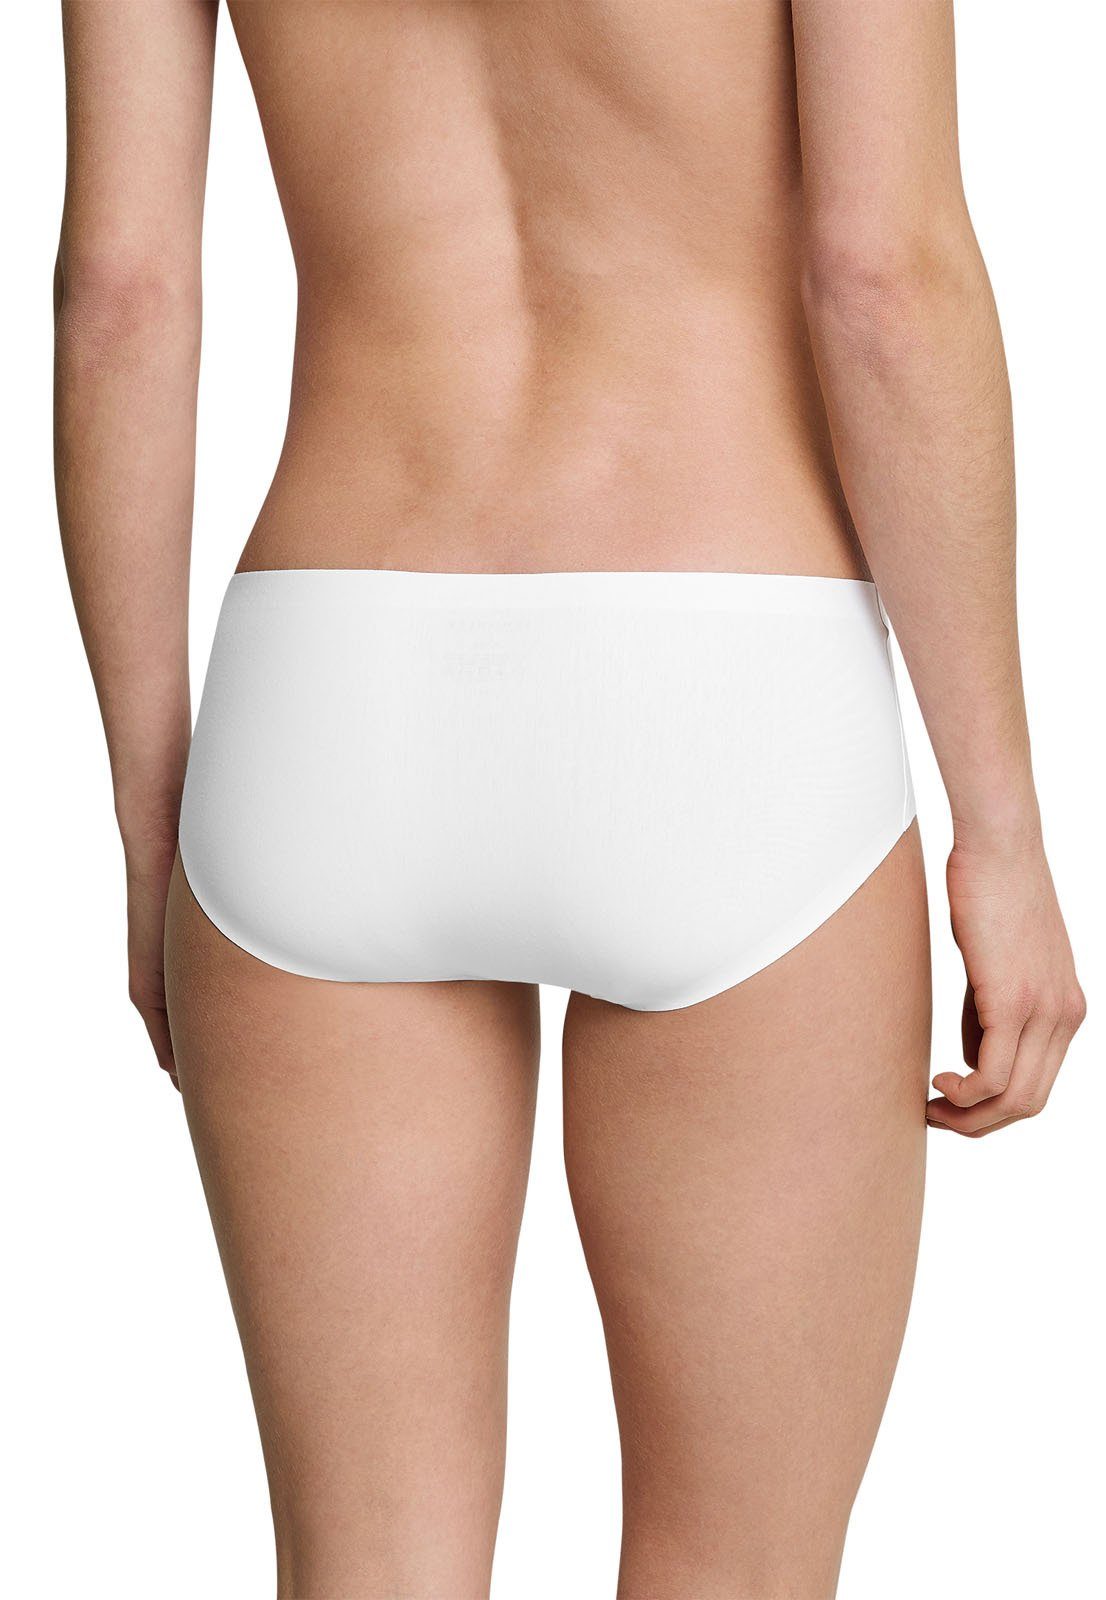 Cotton, Schiesser Weiß/Weiß/Weiß 3er Panty, Invisible Nahtlos Damen - Panty Pack